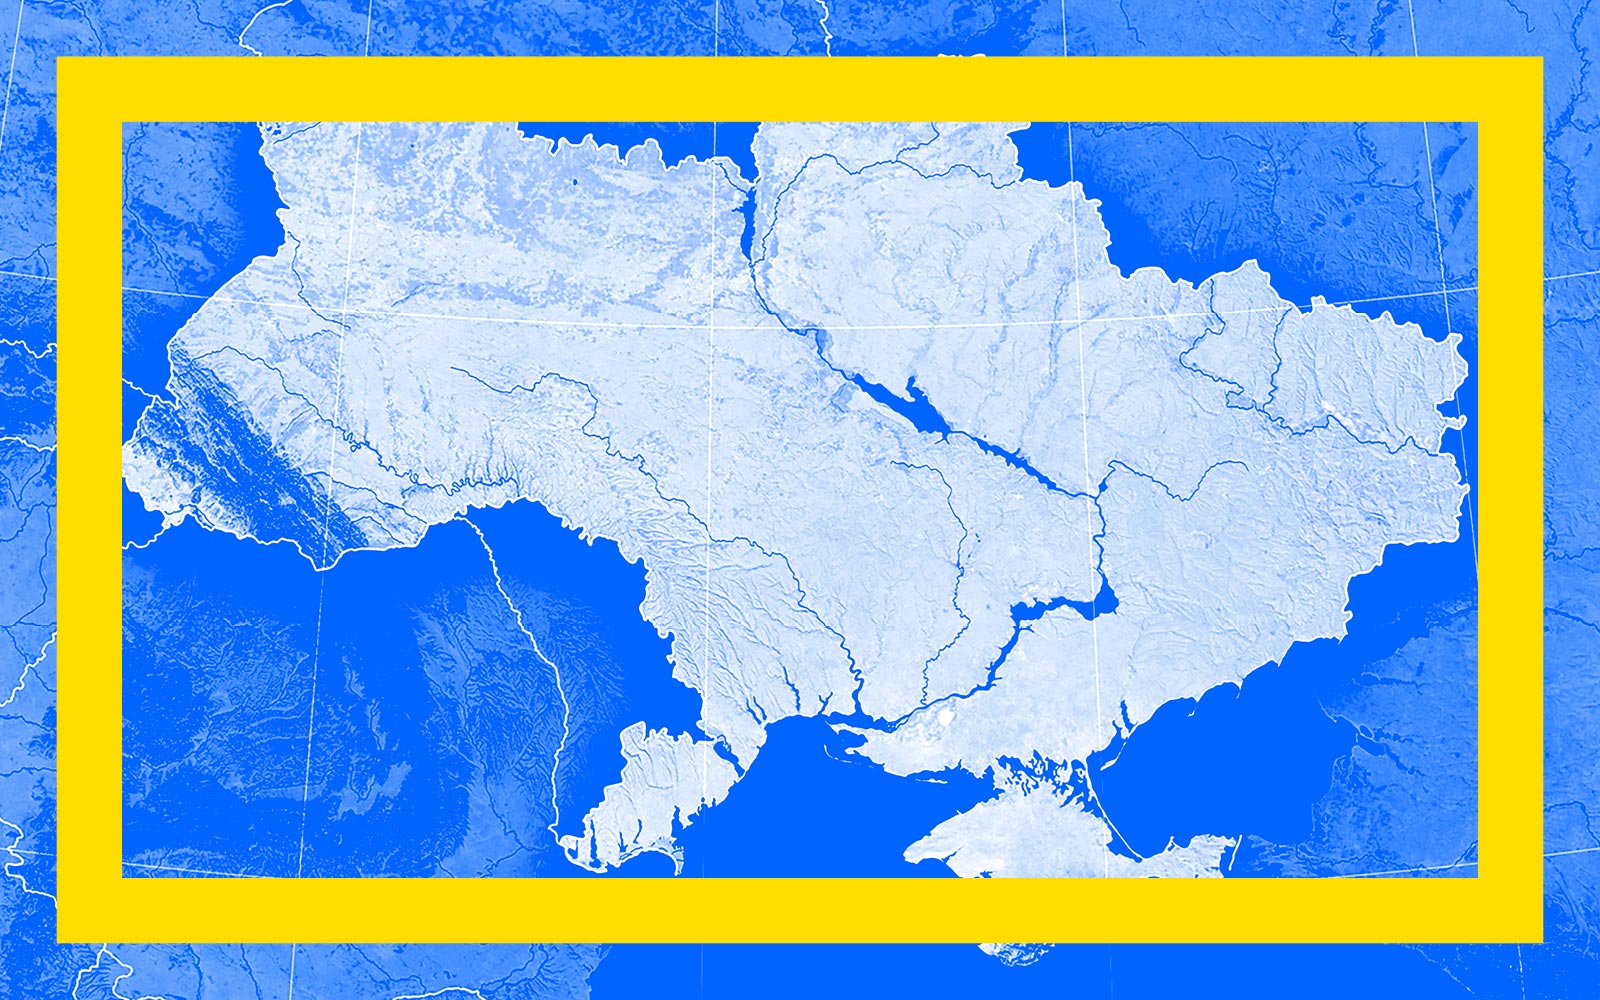 A Invasão da Ucrânia: Desafios para a Europa e o Mundo